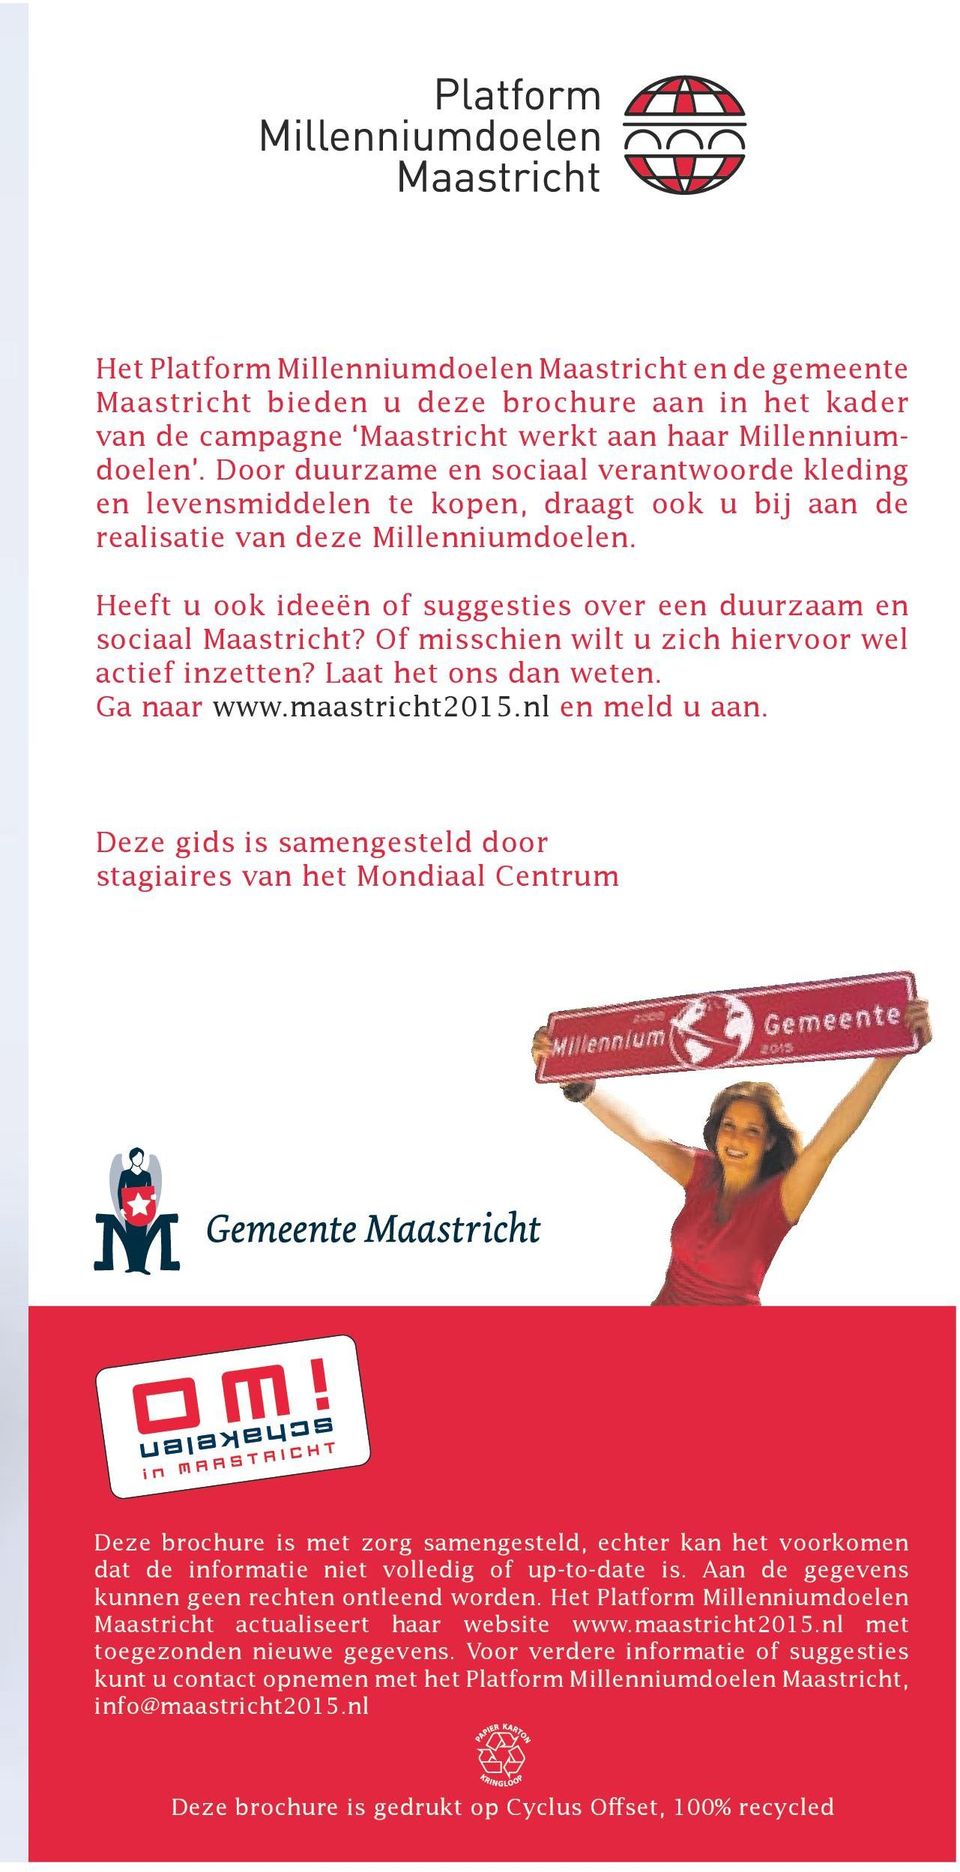 Heeft u ook ideeën of suggesties over een duurzaam en sociaal Maastricht? Of misschien wilt u zich hiervoor wel actief inzetten? Laat het ons dan weten. Ga naar www.maastricht2015.nl en meld u aan.